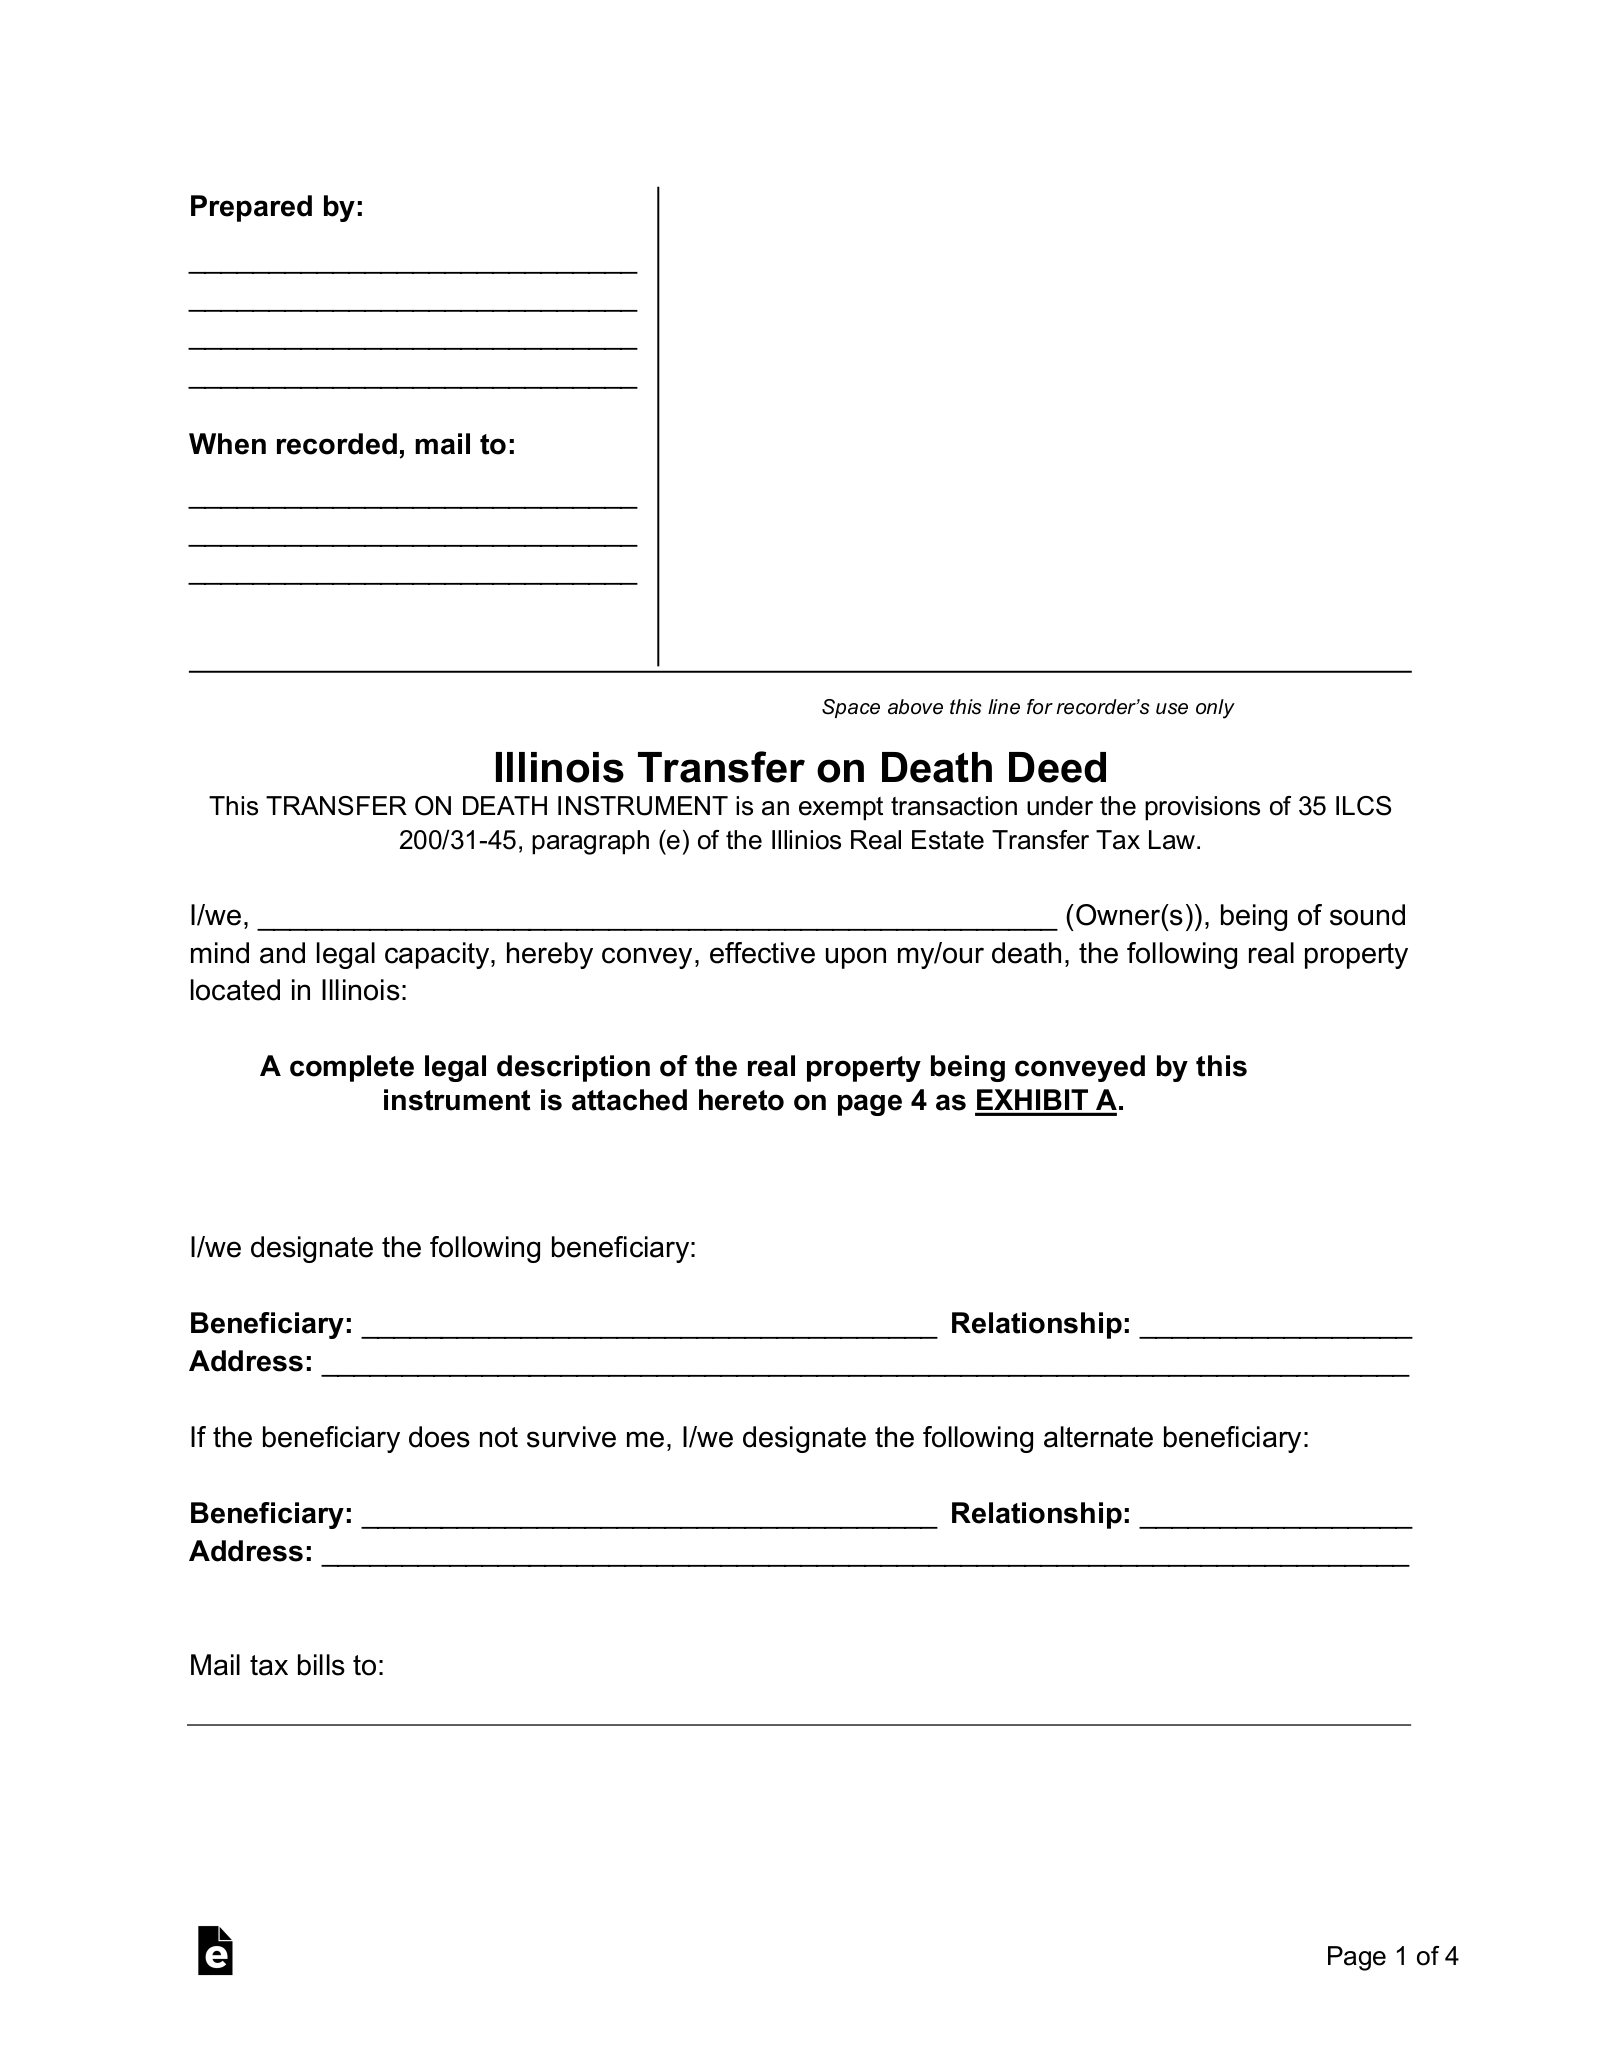 Illinois Transfer on Death Deed